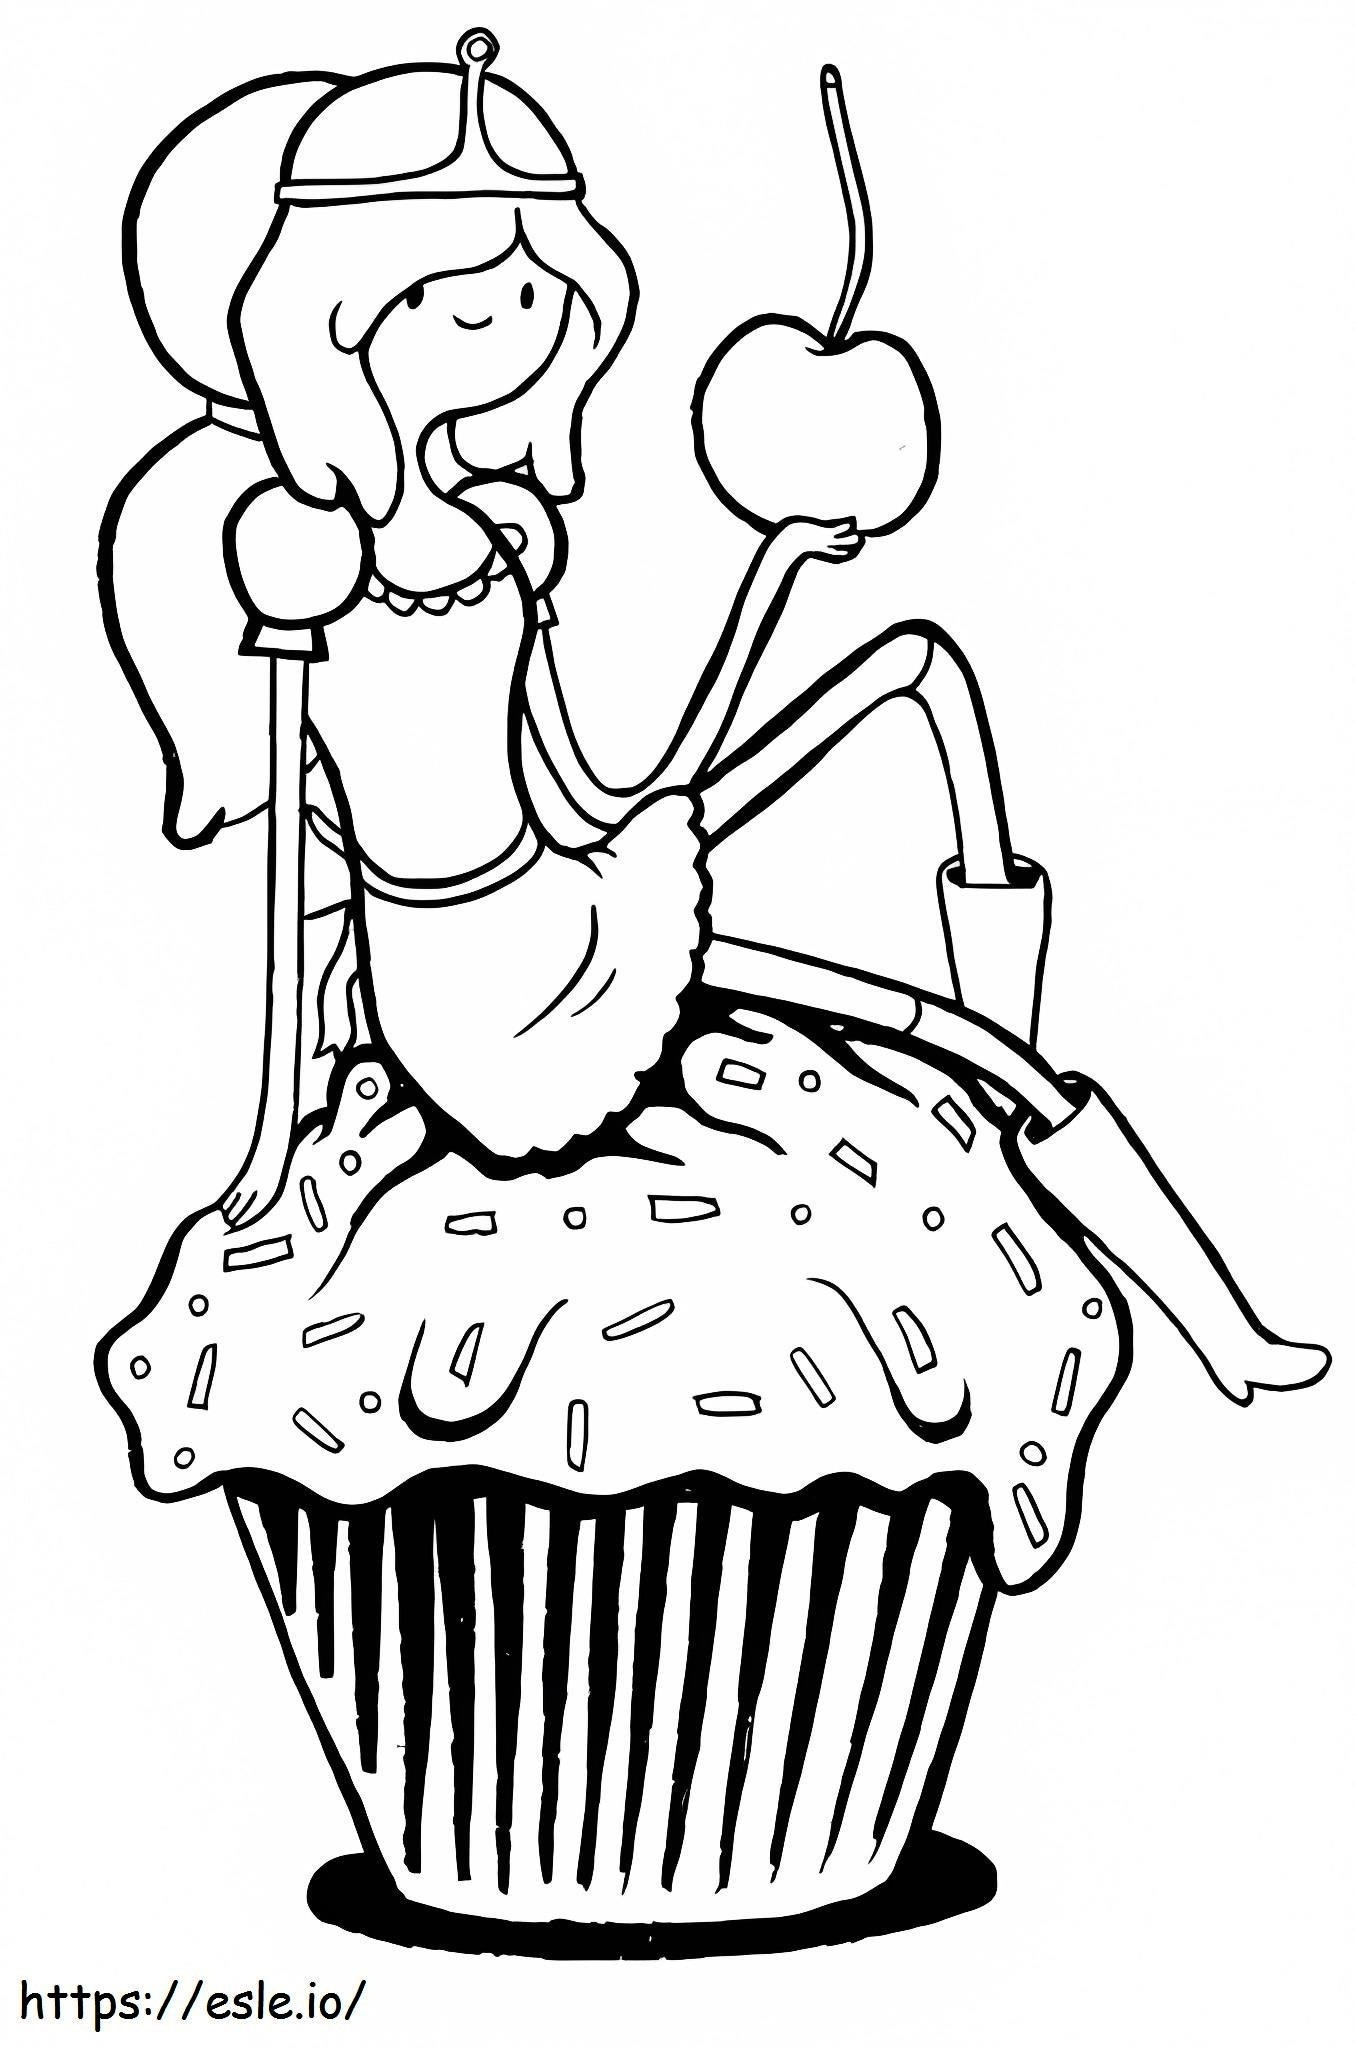 Prinzessin Bubblegum hält Apfel ausmalbilder